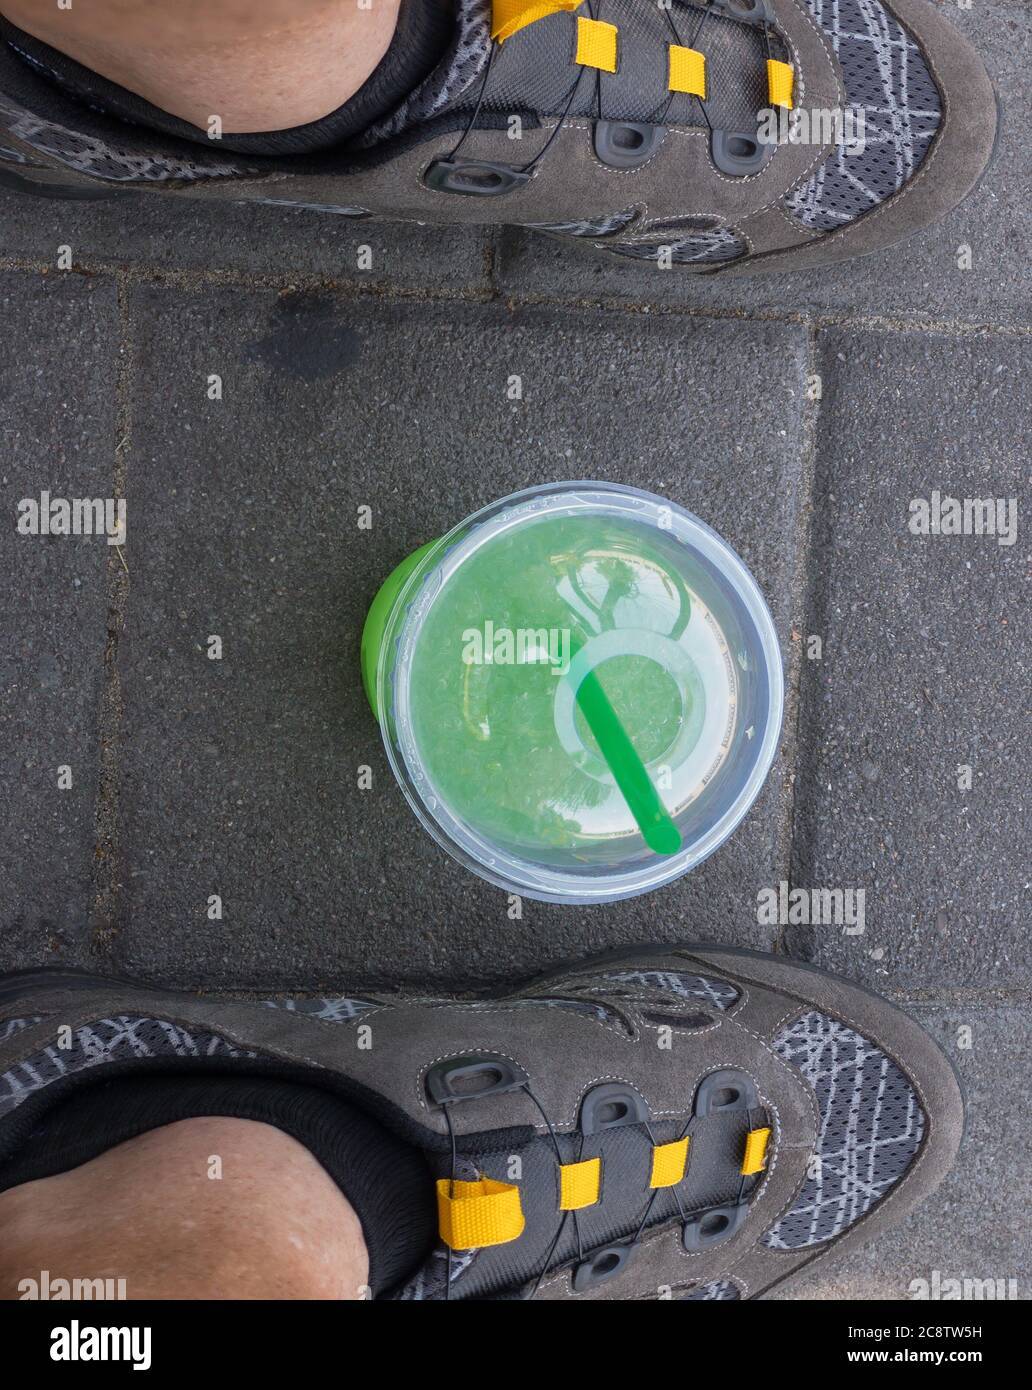 Draufsicht auf Plastikbecher mit grünlicher Flüssigkeit (Mojito) und Cocktail-Rohr innen, stehend auf Bürgersteig zwischen menschlichen Füßen Radschuhe Stockfoto